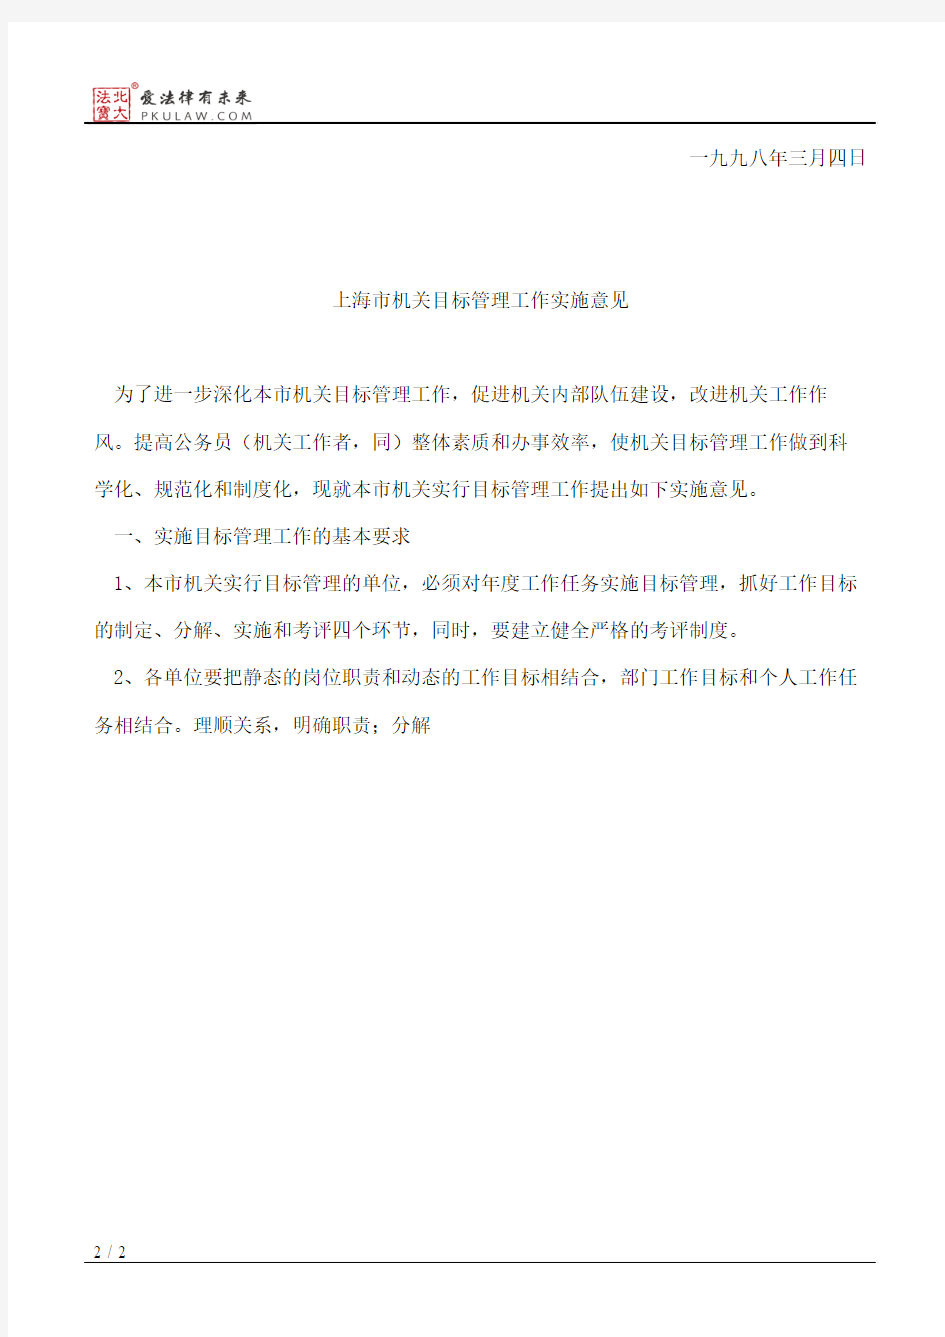 上海市人事局关于印发《上海市机关目标管理工作实施意见》的通知